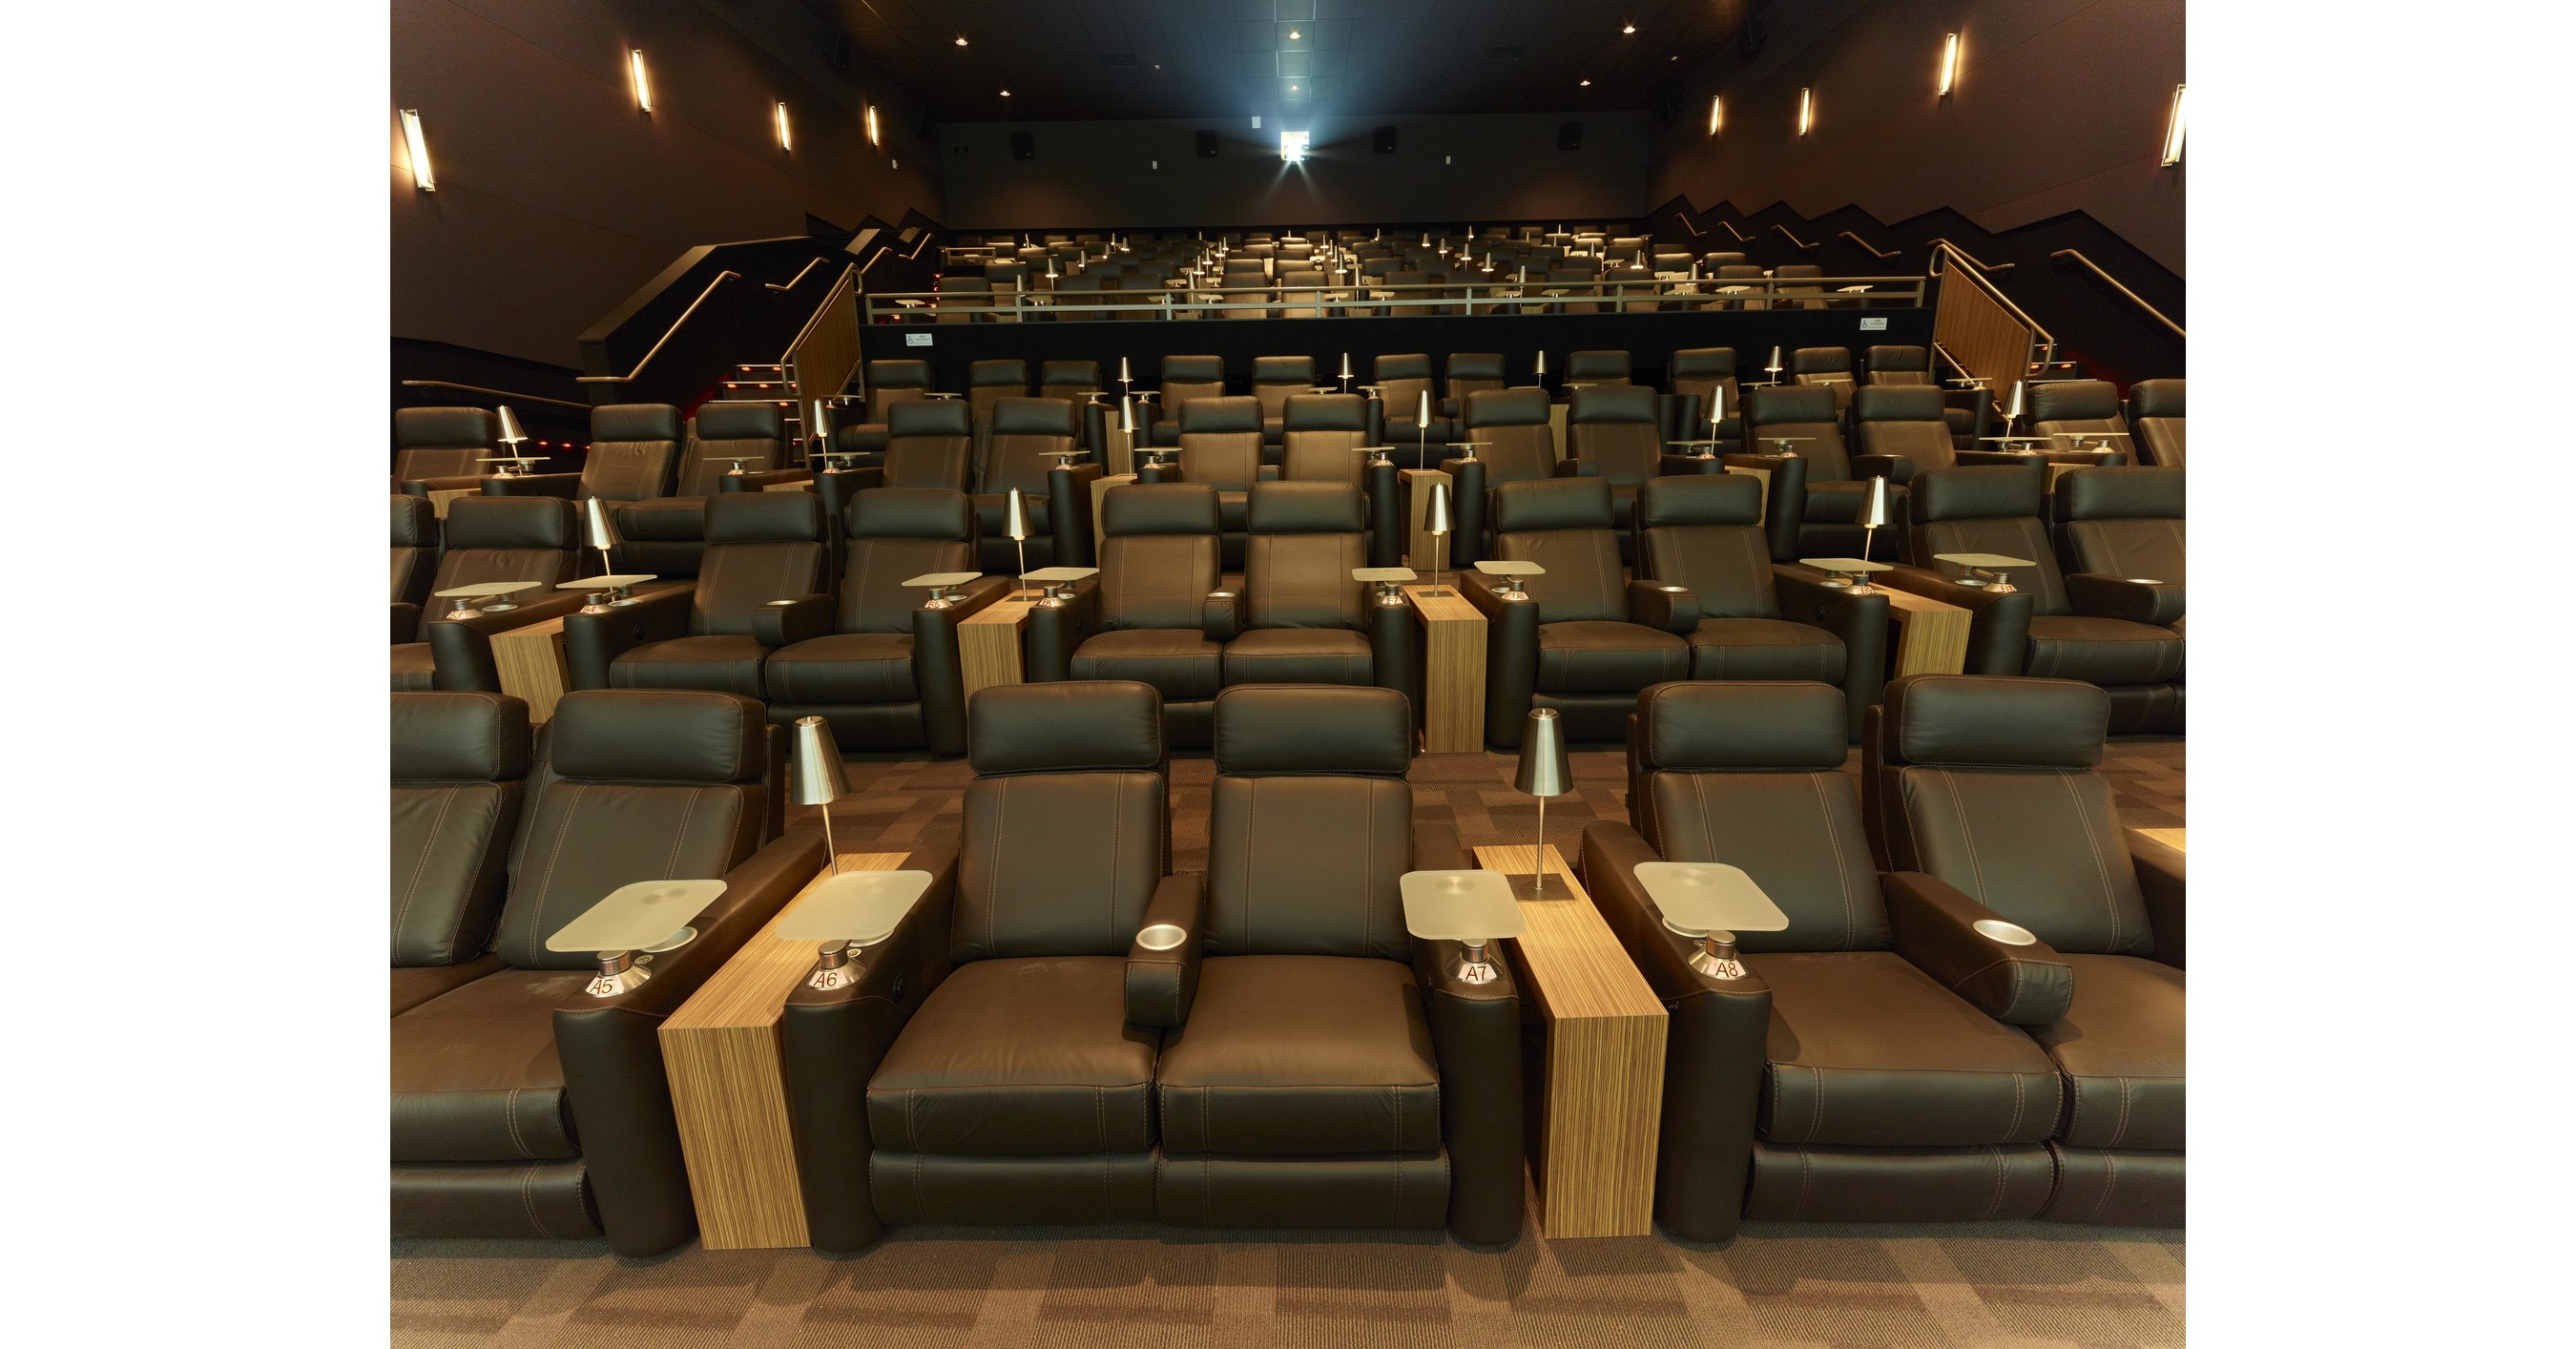 Кинотеатр с мягкими креслами. Кинотеатр с диванами. Кинотеатр лакшери. Модный кинотеатр с кожаными креслами. Cinepolis.